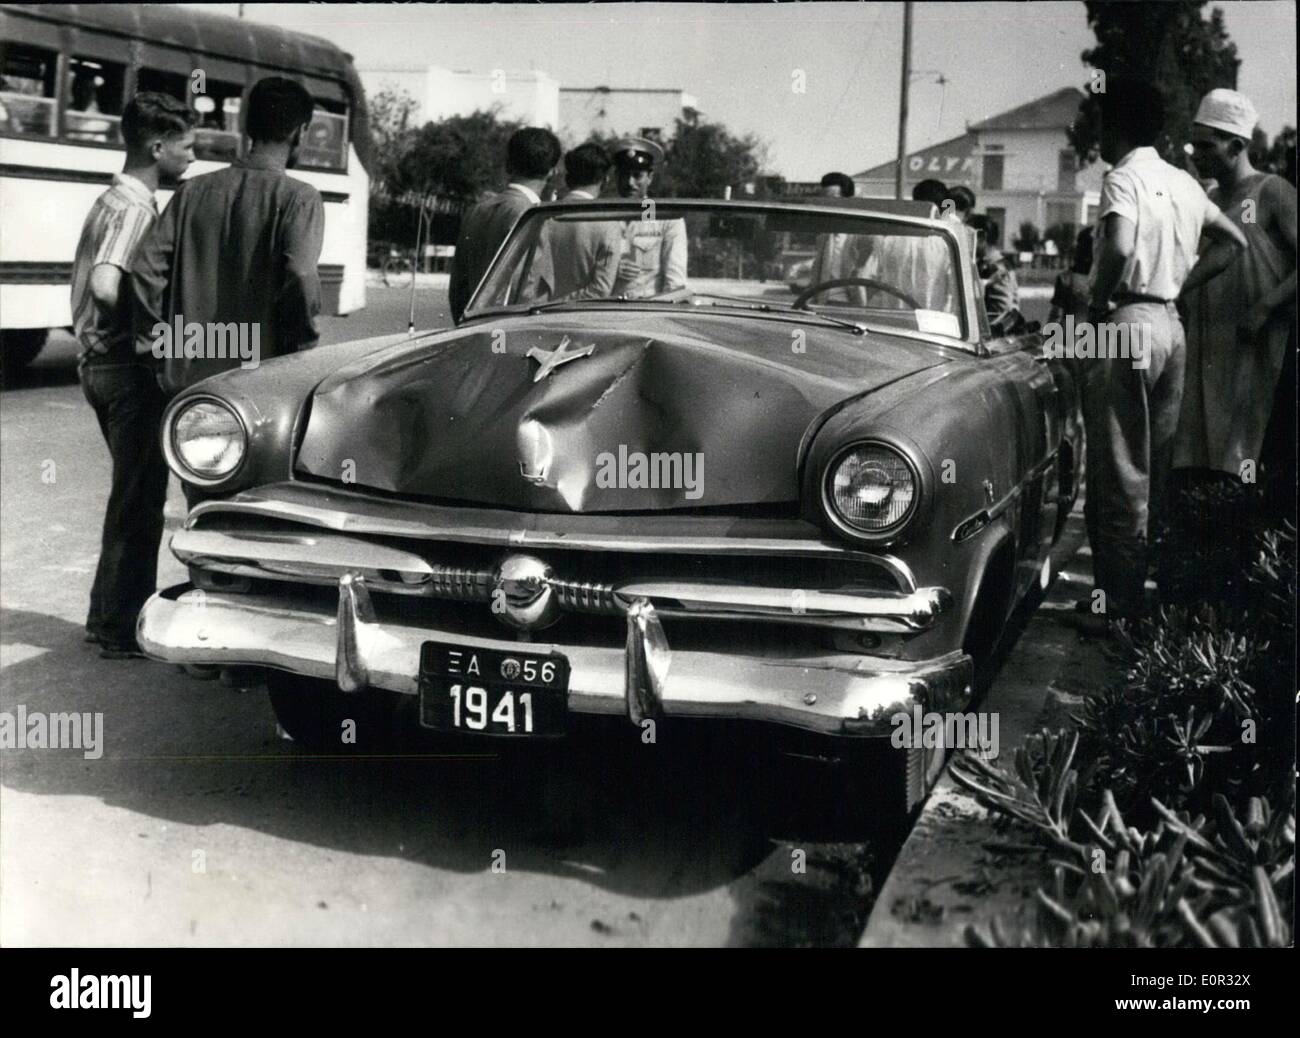 Enero 01, 1958 - El coche de veterano de las Fuerzas Aéreas de Estados Unidos el sargento. Mouzali en los que puede haber visto los daños causados cuando el coche Foto de stock